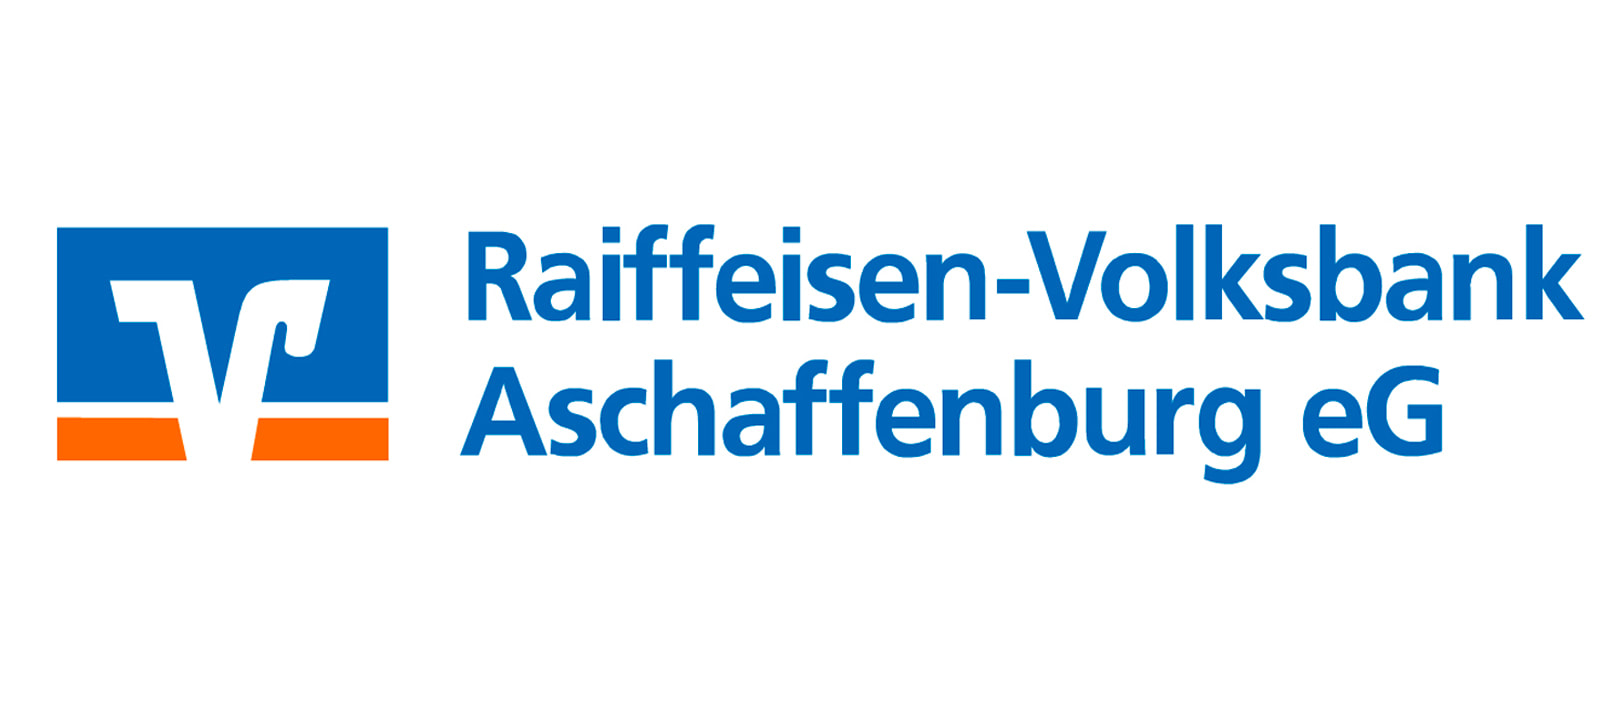 Raiffeisen-Volksbank Aschaffenburg eG